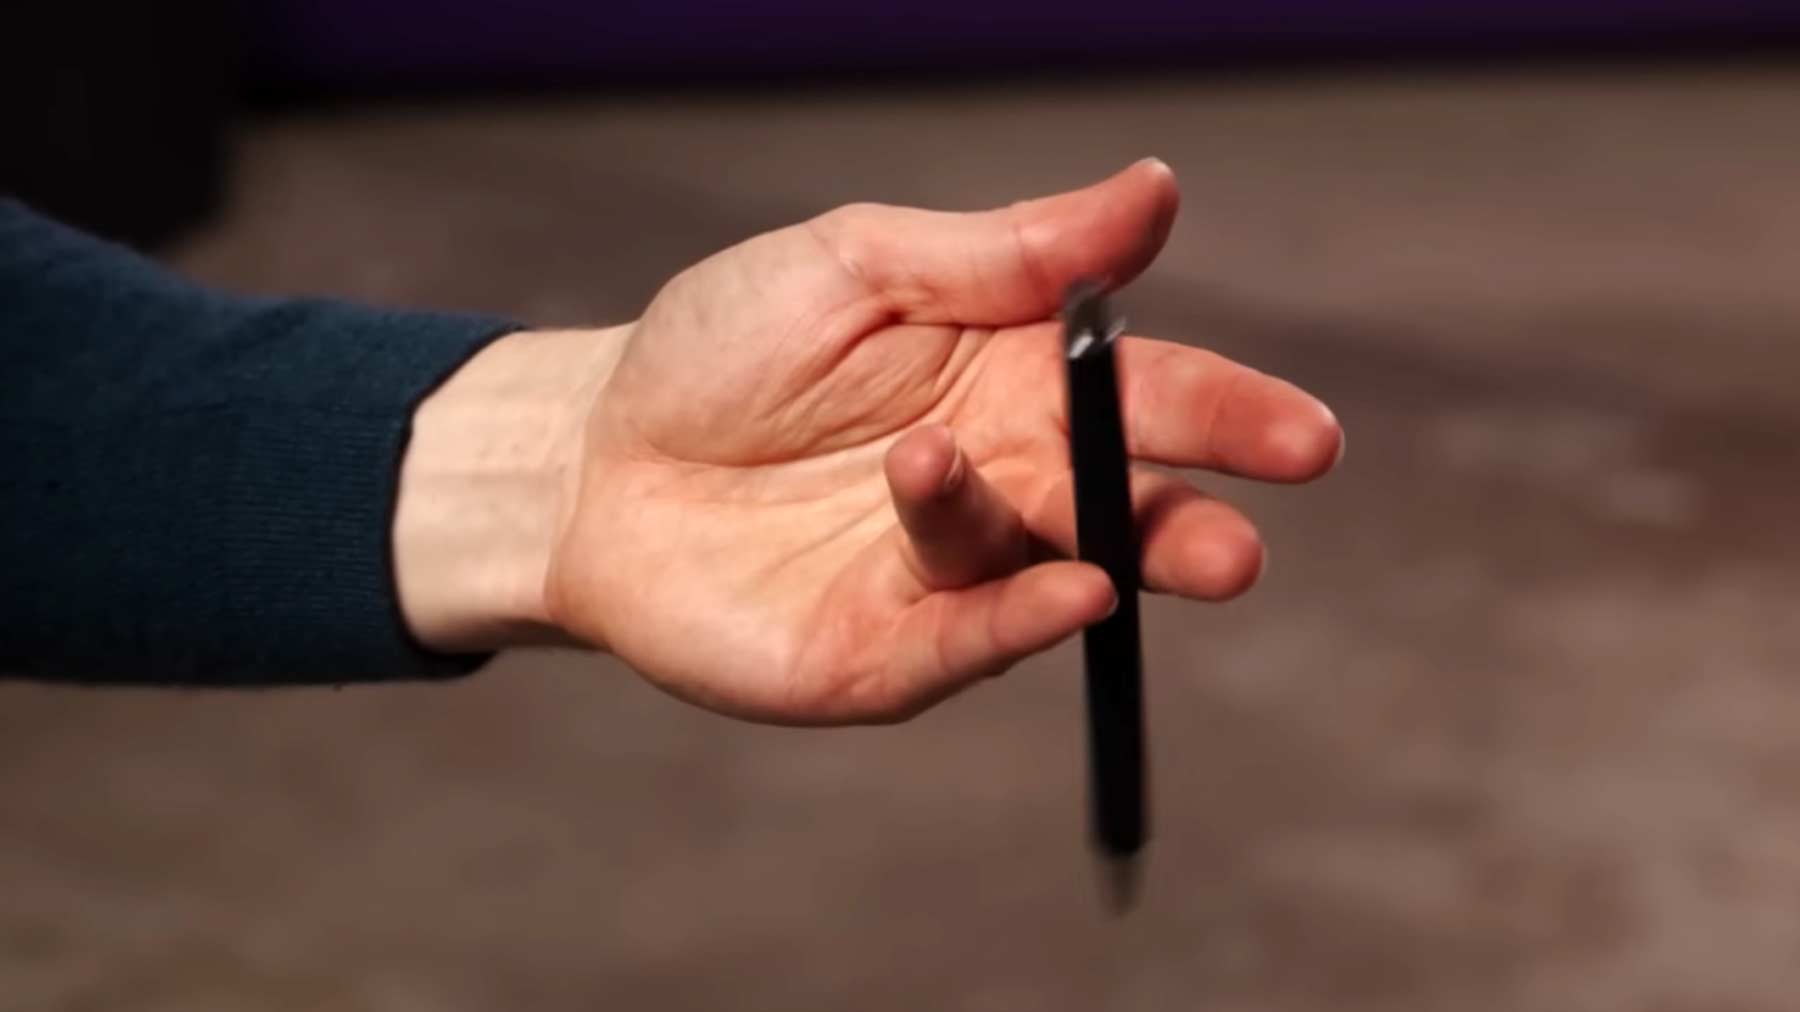 Stift mit den Fingern drehen: Tutorial von einfach bis komplex